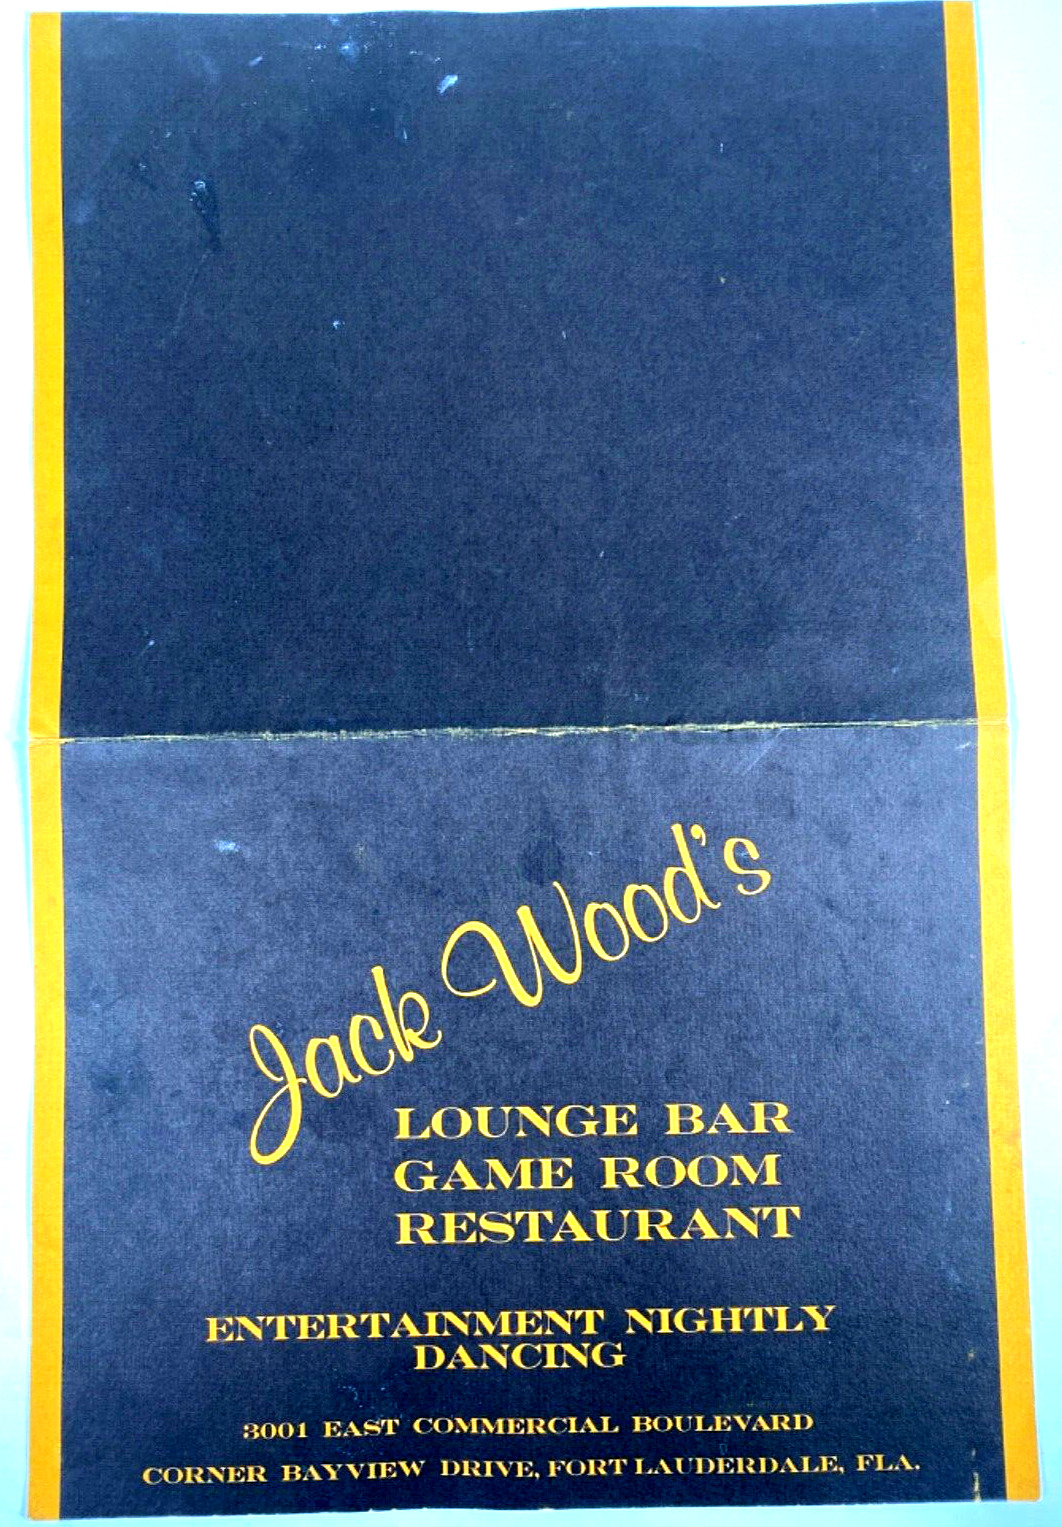 1970s JACK WOODS LOUNGE BAR vintage restaurant menu FORT LAUDERDALE, FLORIDA